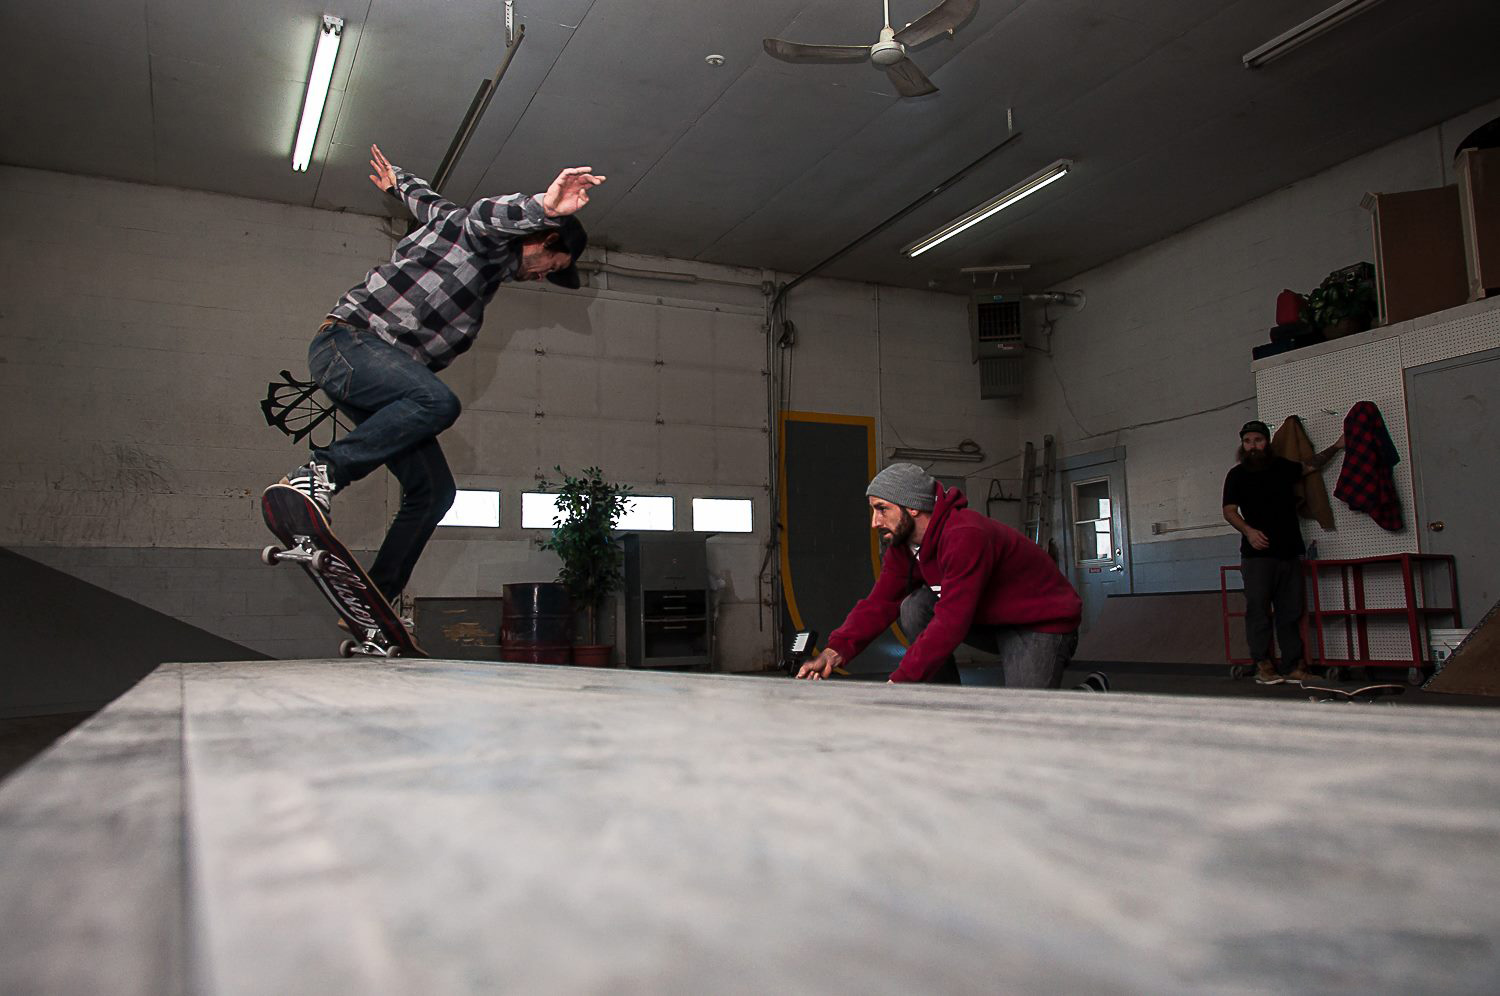 Shredco : des skateparks faits par et pour les skateurs d'ici